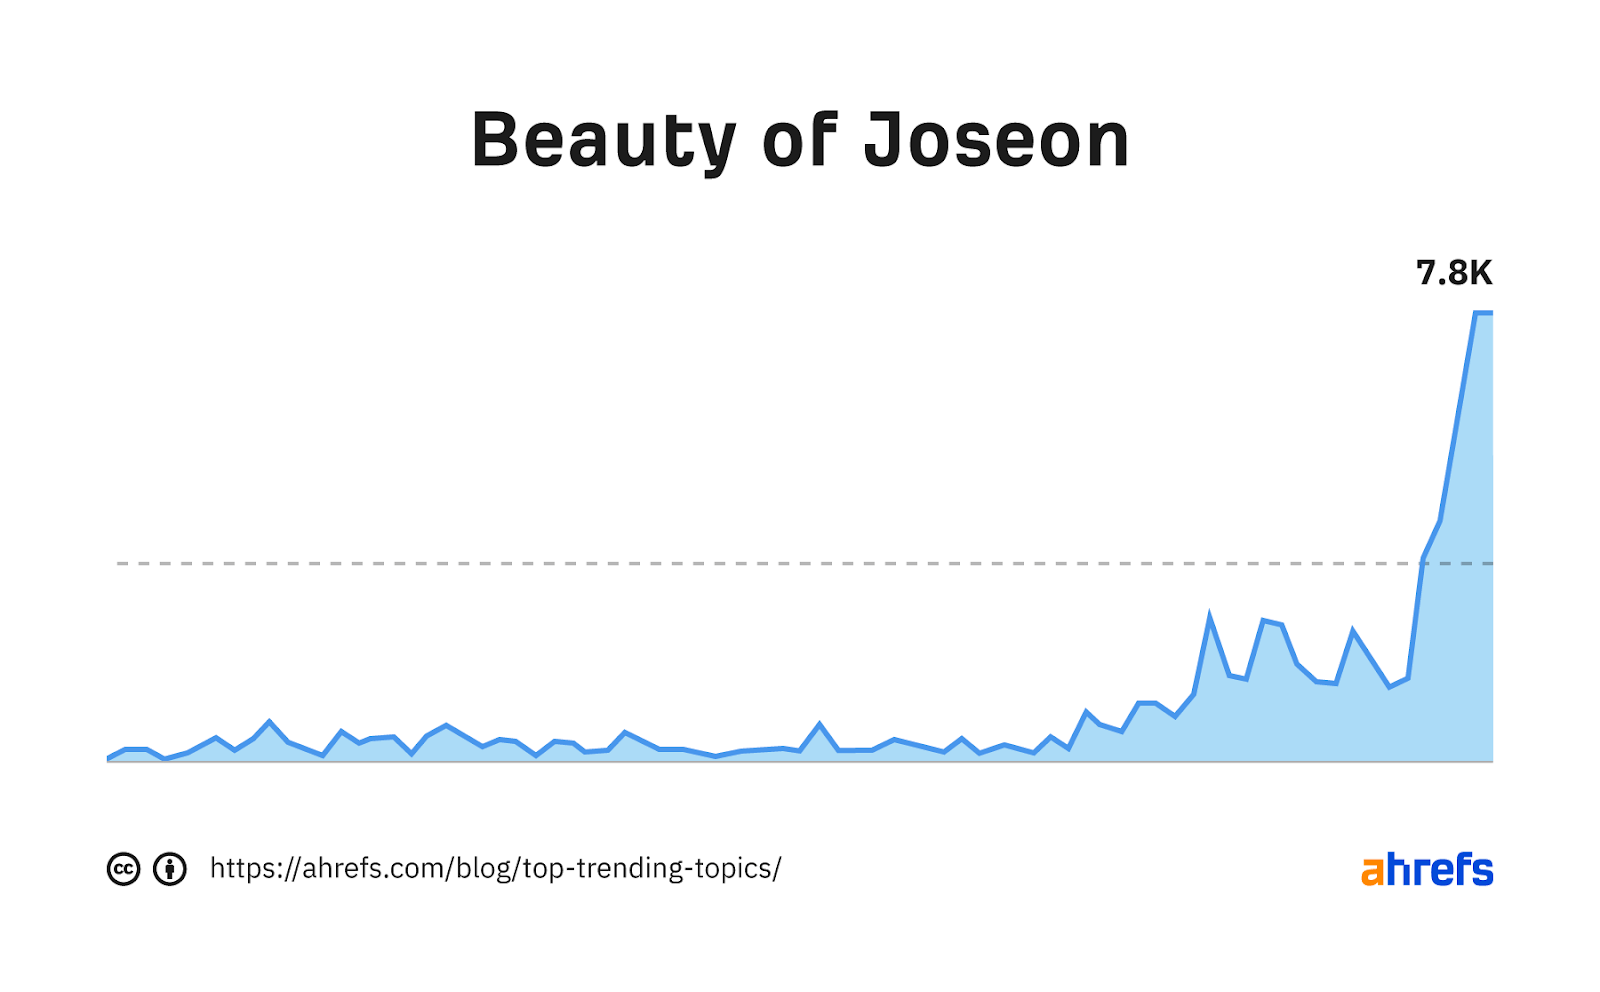 Graphique de tendance pour le mot-clé "beauté de joseon"